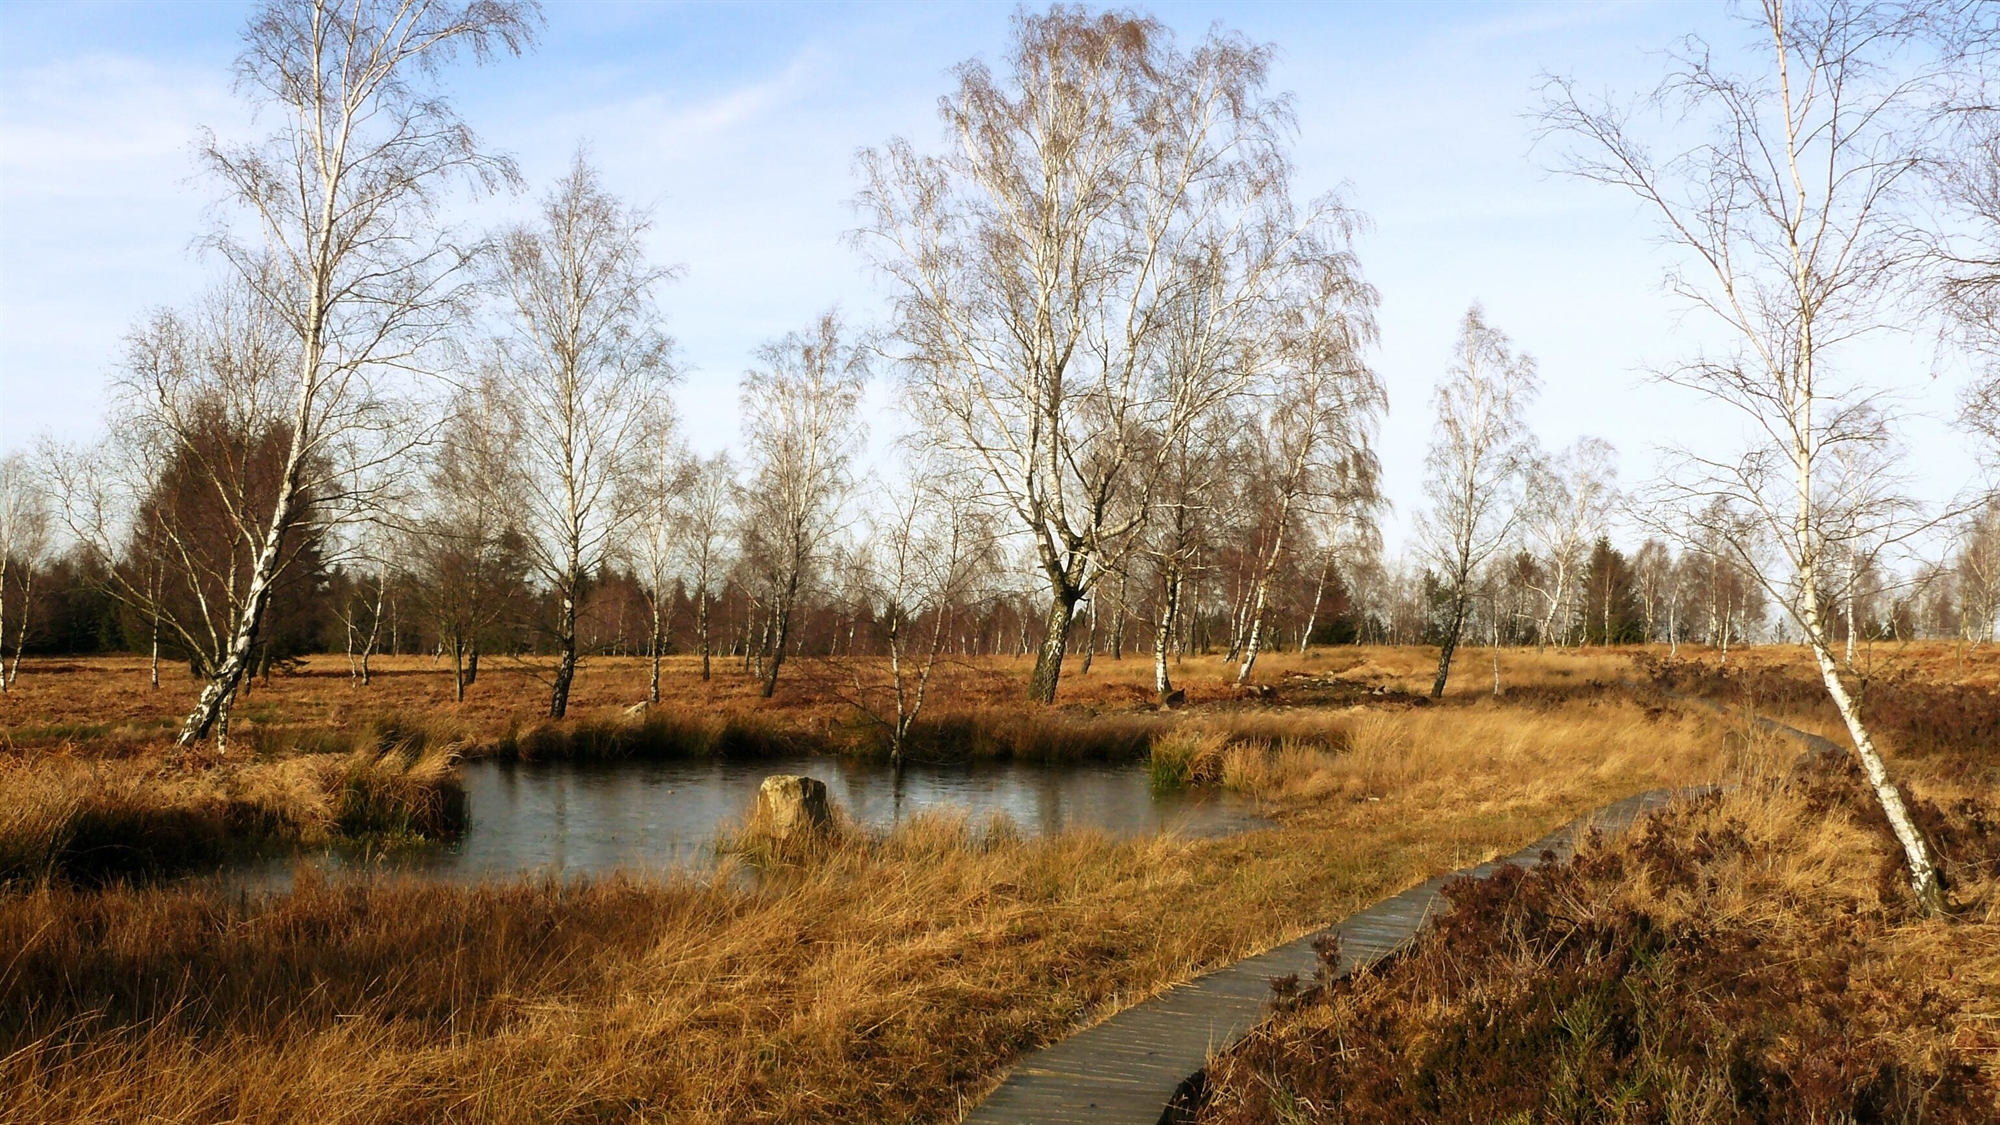 Moorlandschaft im Winter in Brauntönen und mit Birken ohne Laub, im Vordergrund ist ein ein Bohlenweg zu sehen und mittig liegt eine offene Wasserfläche